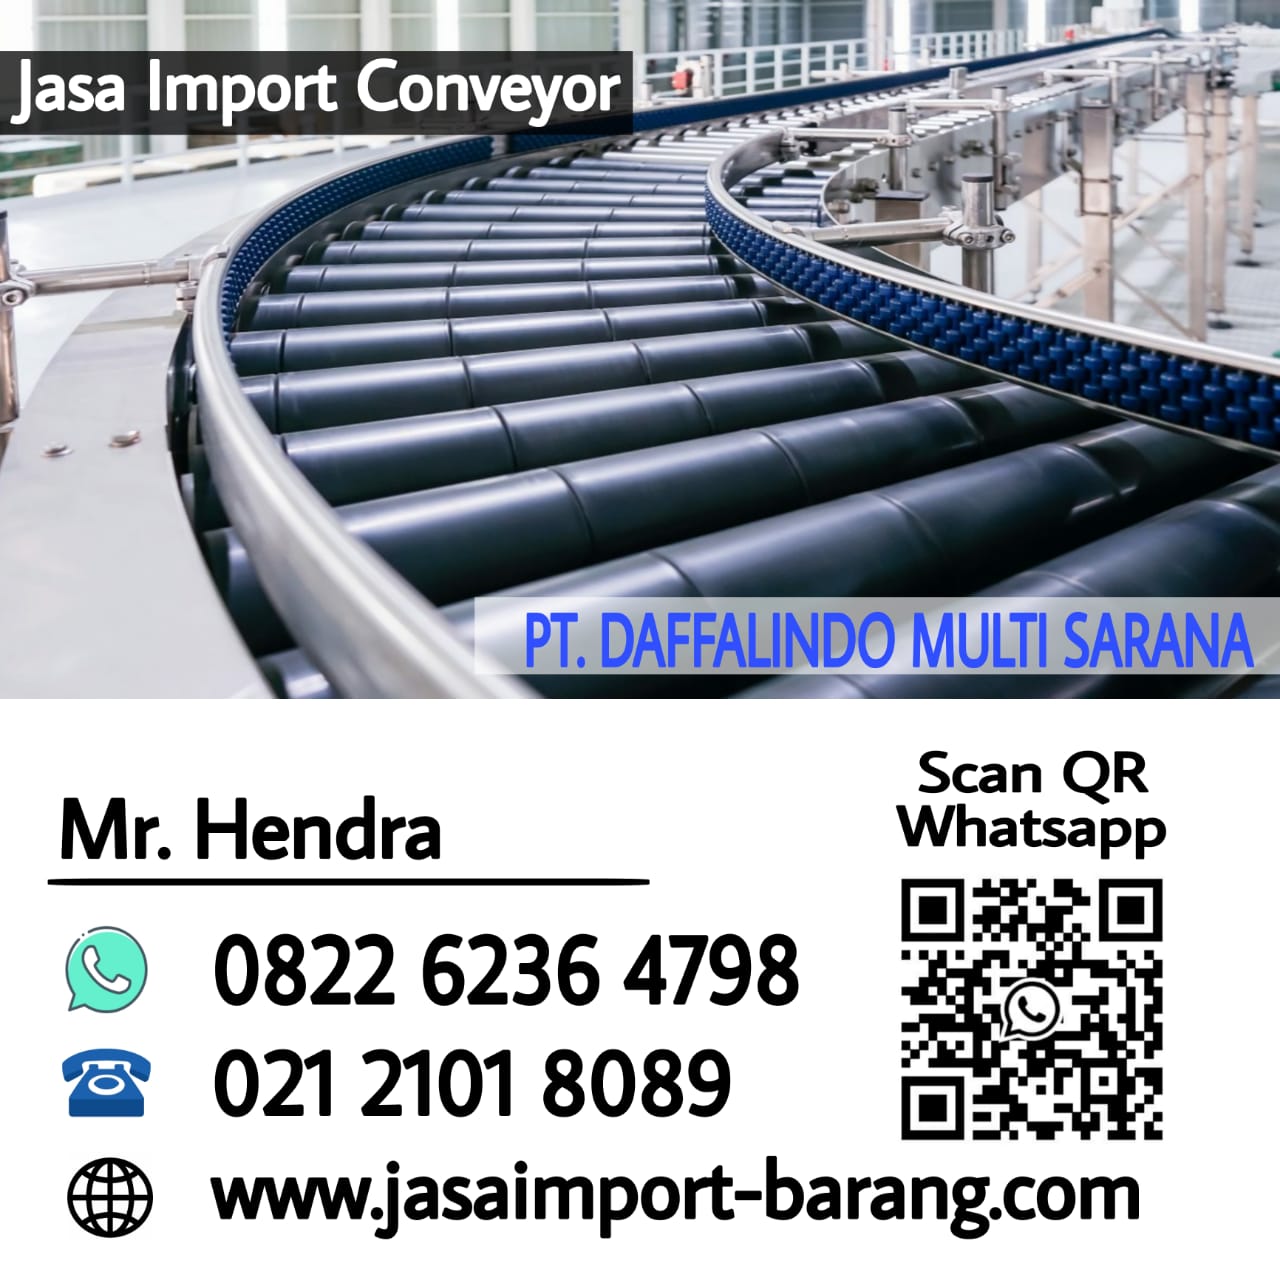 Jasa-Import-Conveyor.jpg